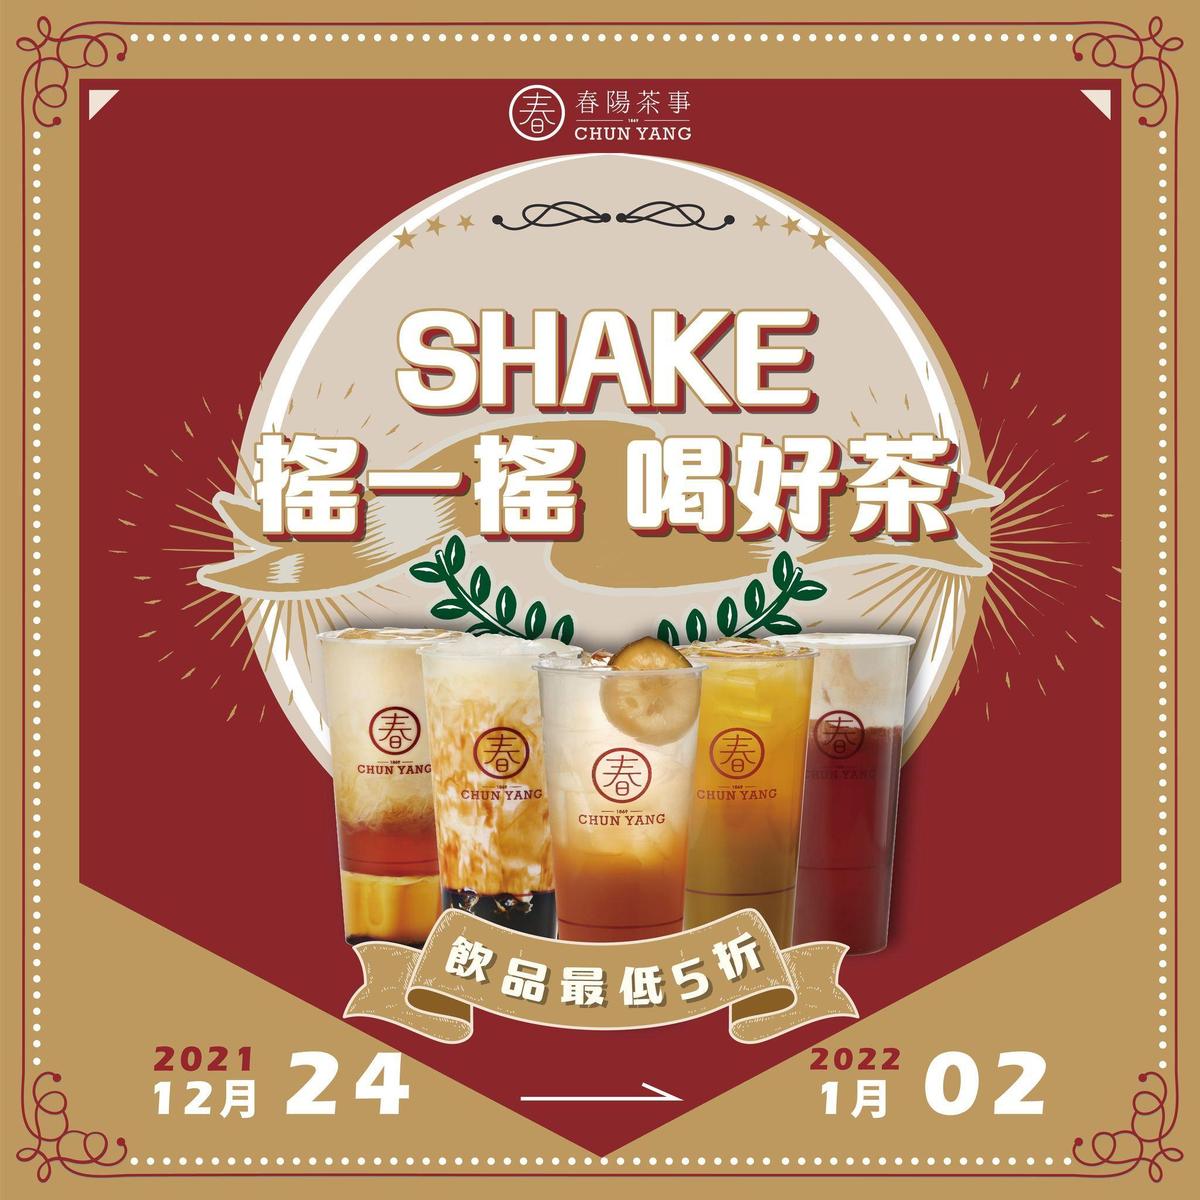 春陽茶事祭出限時10天「SHAKE搖一搖 • 喝好茶」活動。（翻攝自春陽茶事臉書）